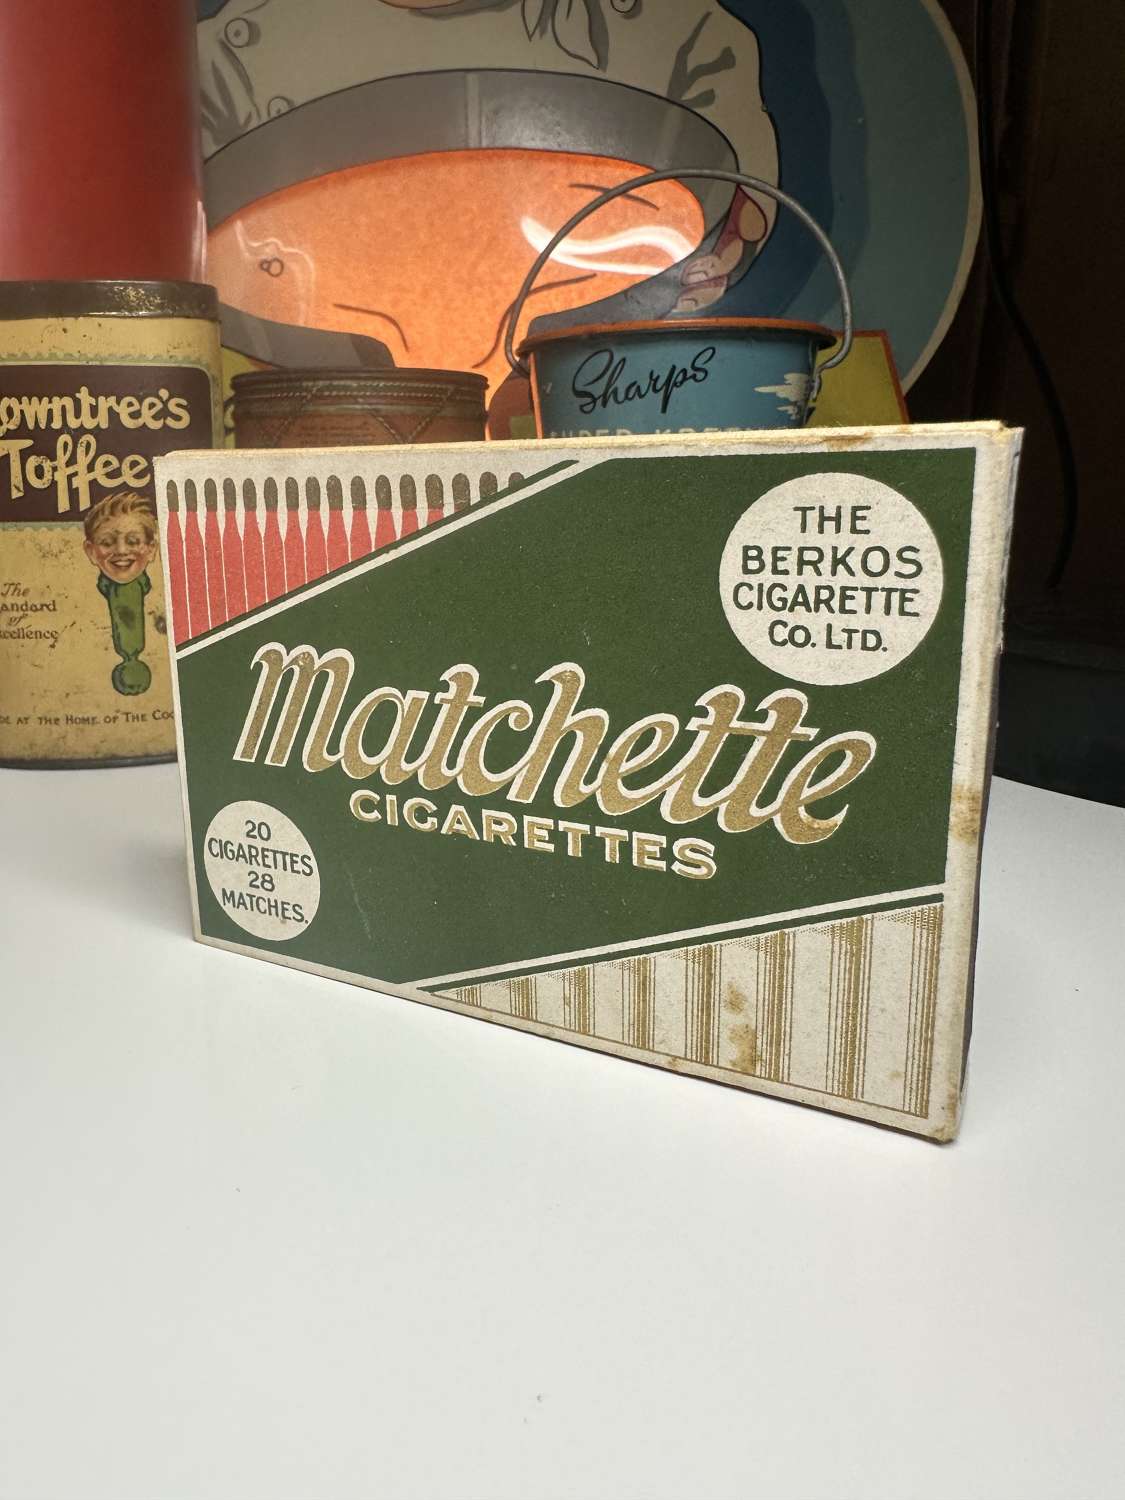 Lovely live matchette cigarette packet